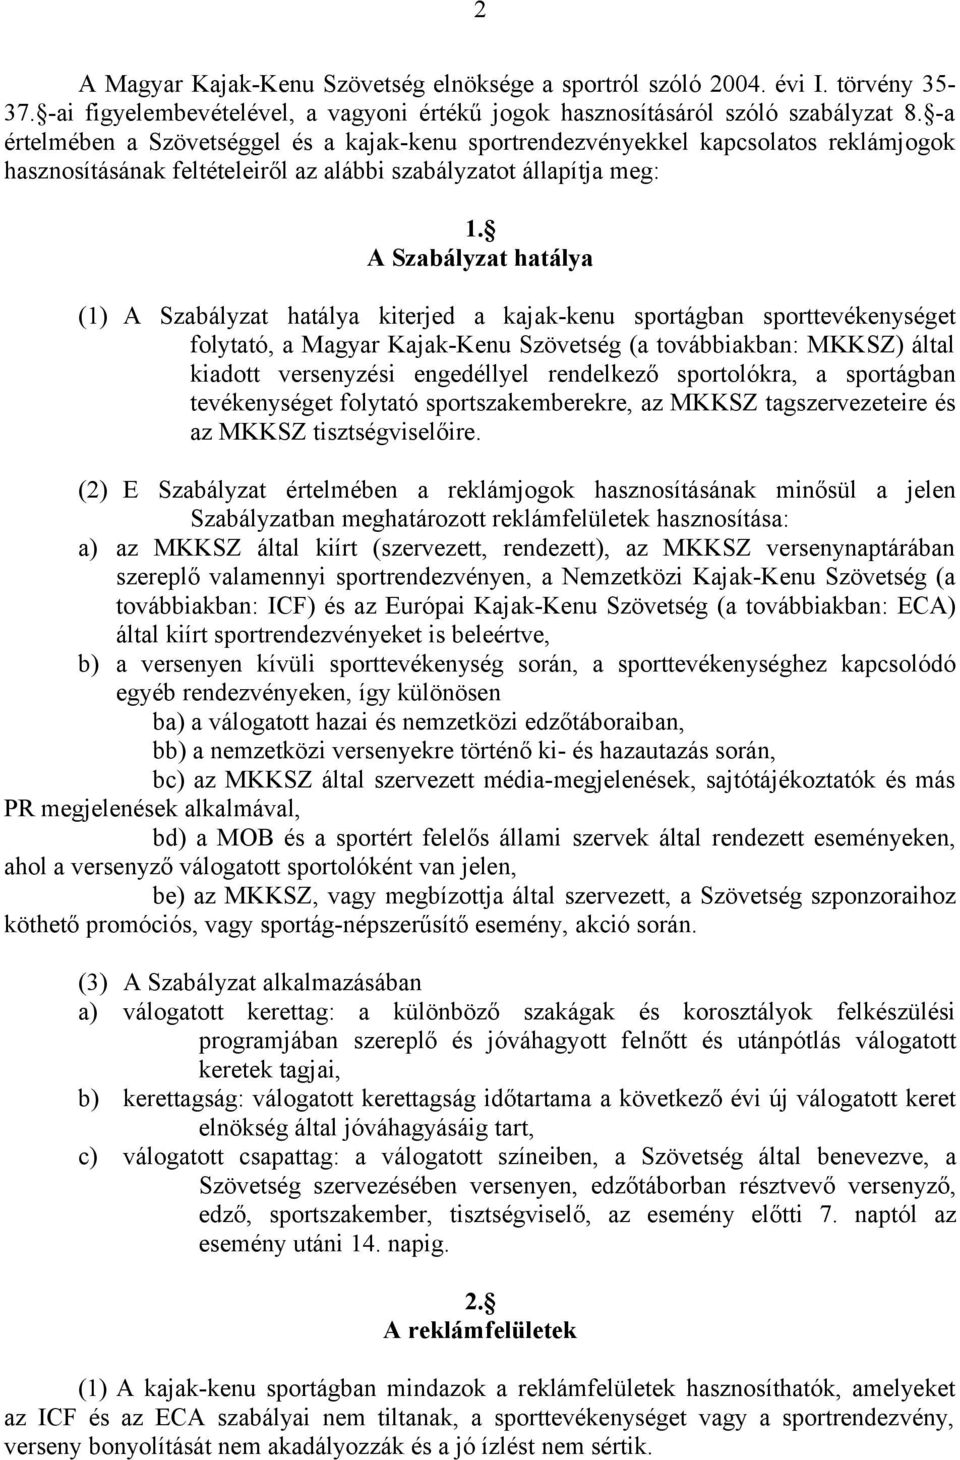 A Szabályzat hatálya (1) A Szabályzat hatálya kiterjed a kajak-kenu sportágban sporttevékenységet folytató, a Magyar Kajak-Kenu Szövetség (a továbbiakban: MKKSZ) által kiadott versenyzési engedéllyel